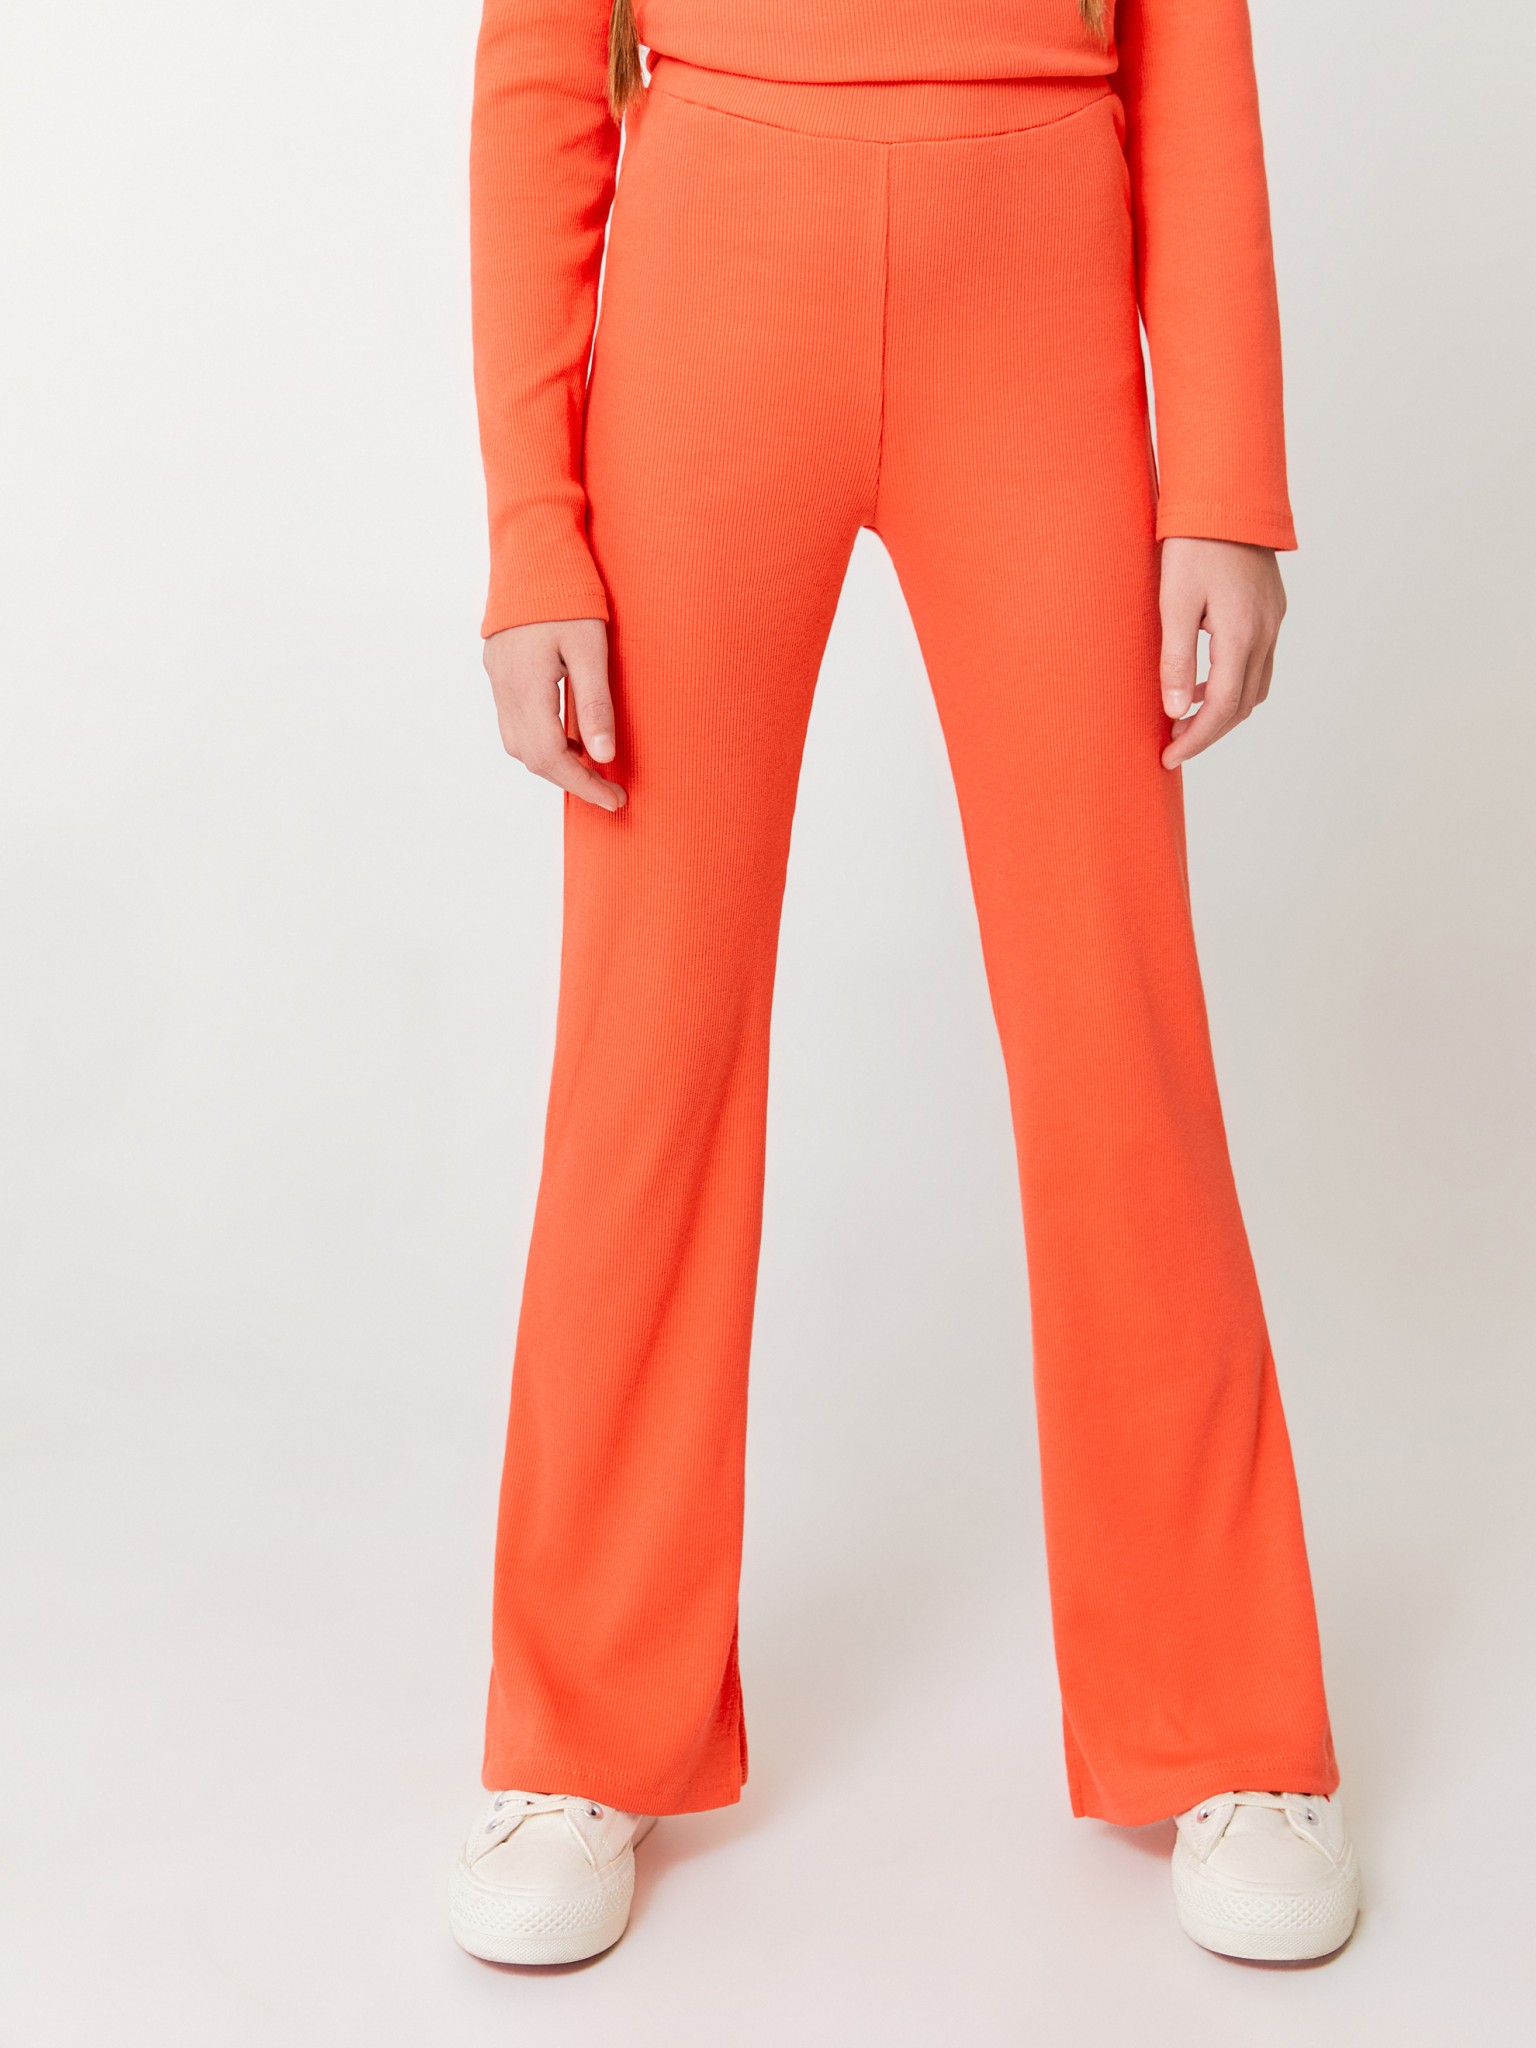 Брюки в рубчик ACOOLA 20200160011, оранжевый, 146 термокомплект для мальчиков playtoday брюки толстовка оранжевый 140 146